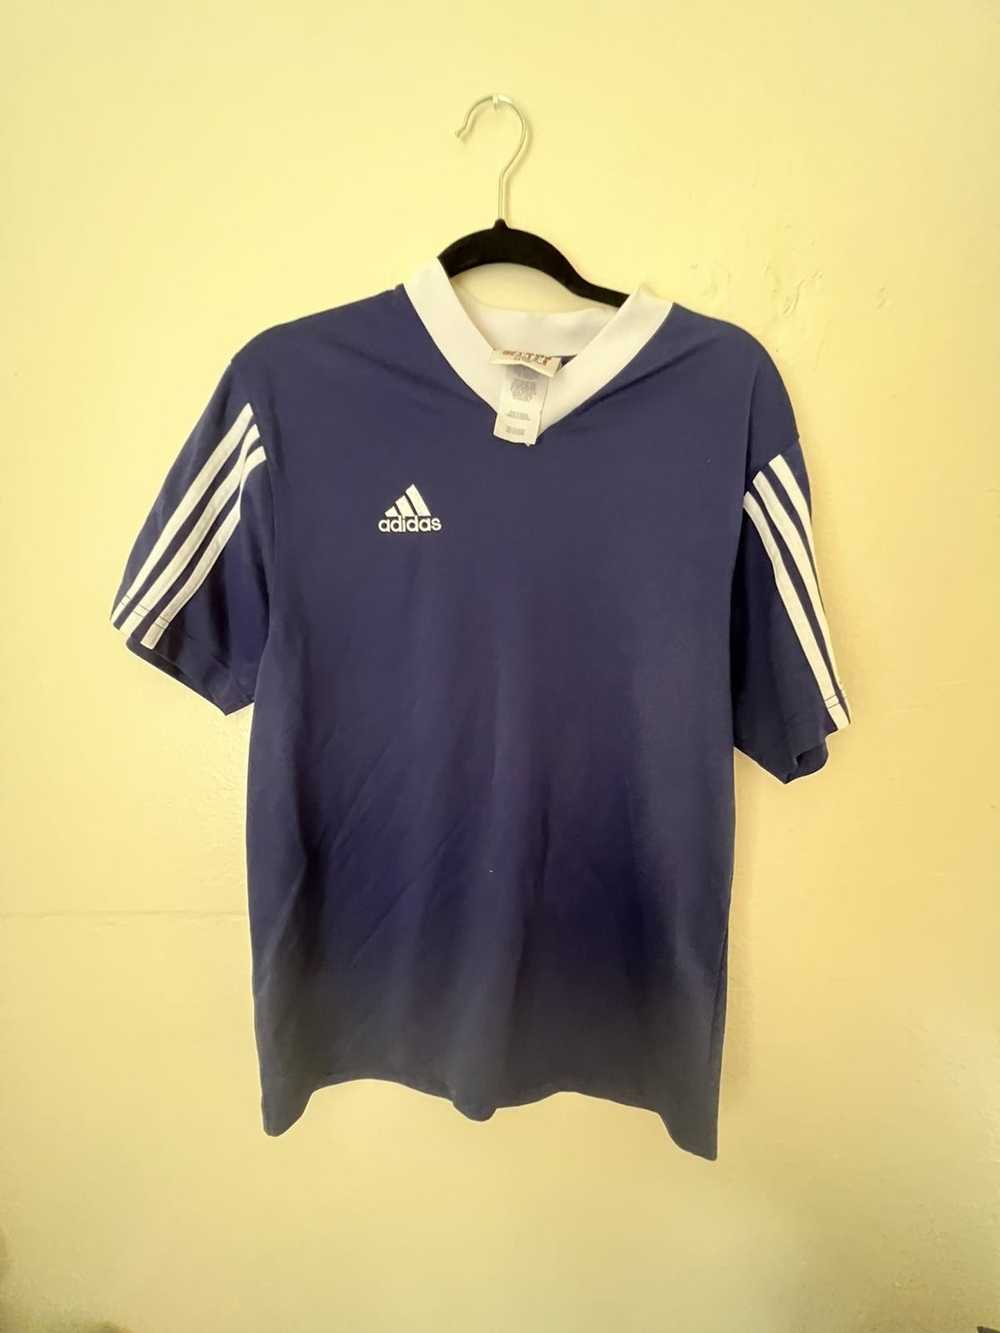 Adidas × Vintage Vtg adidas soccer jersey medium … - image 1